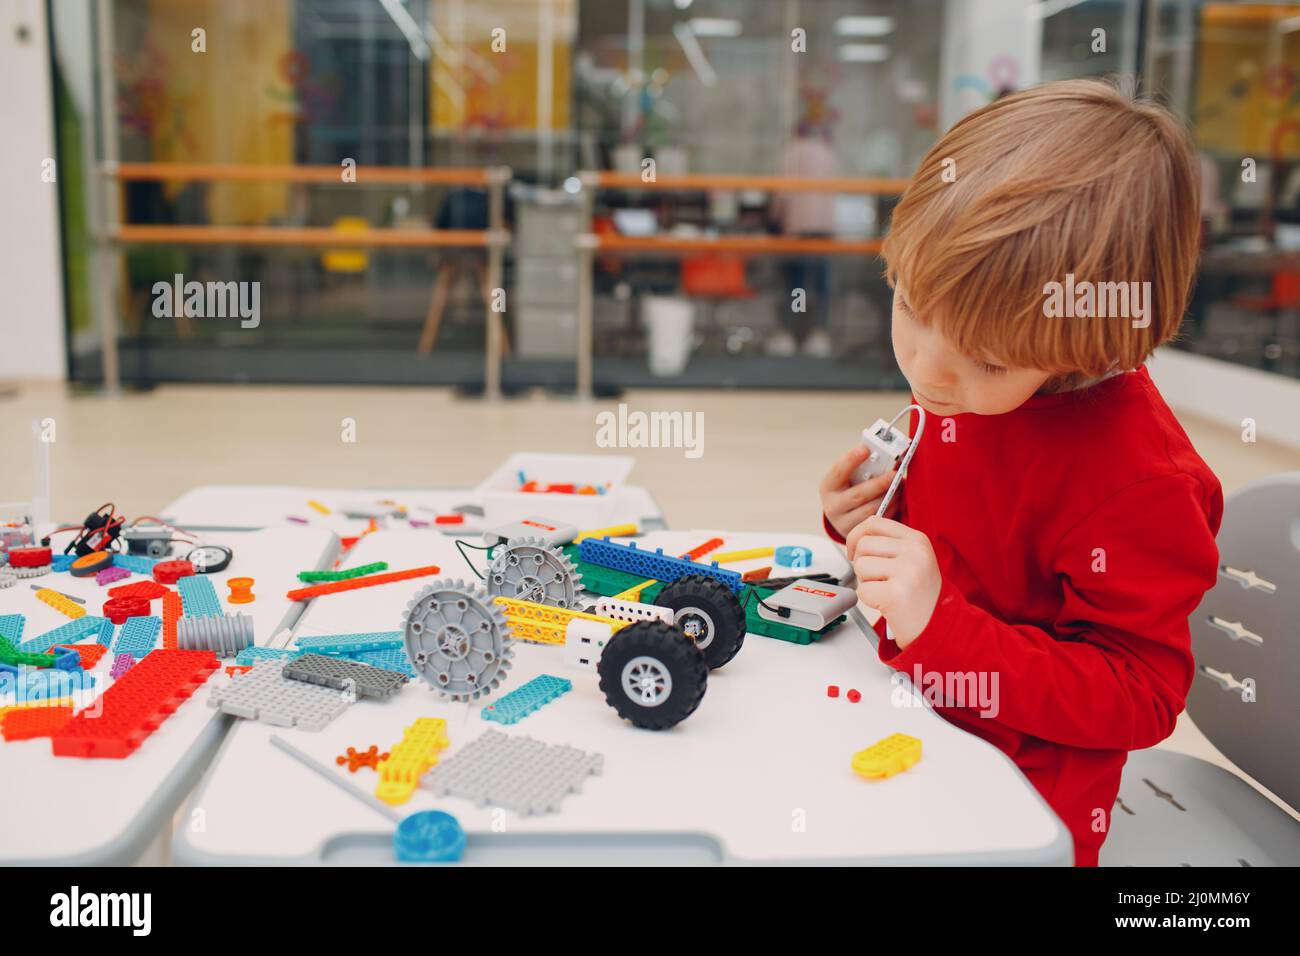 Kleiner Junge Kind Kind Konstruktor Überprüfung technisches Spielzeug. Kinder Robotics Konstruktor montieren Roboter. Stockfoto